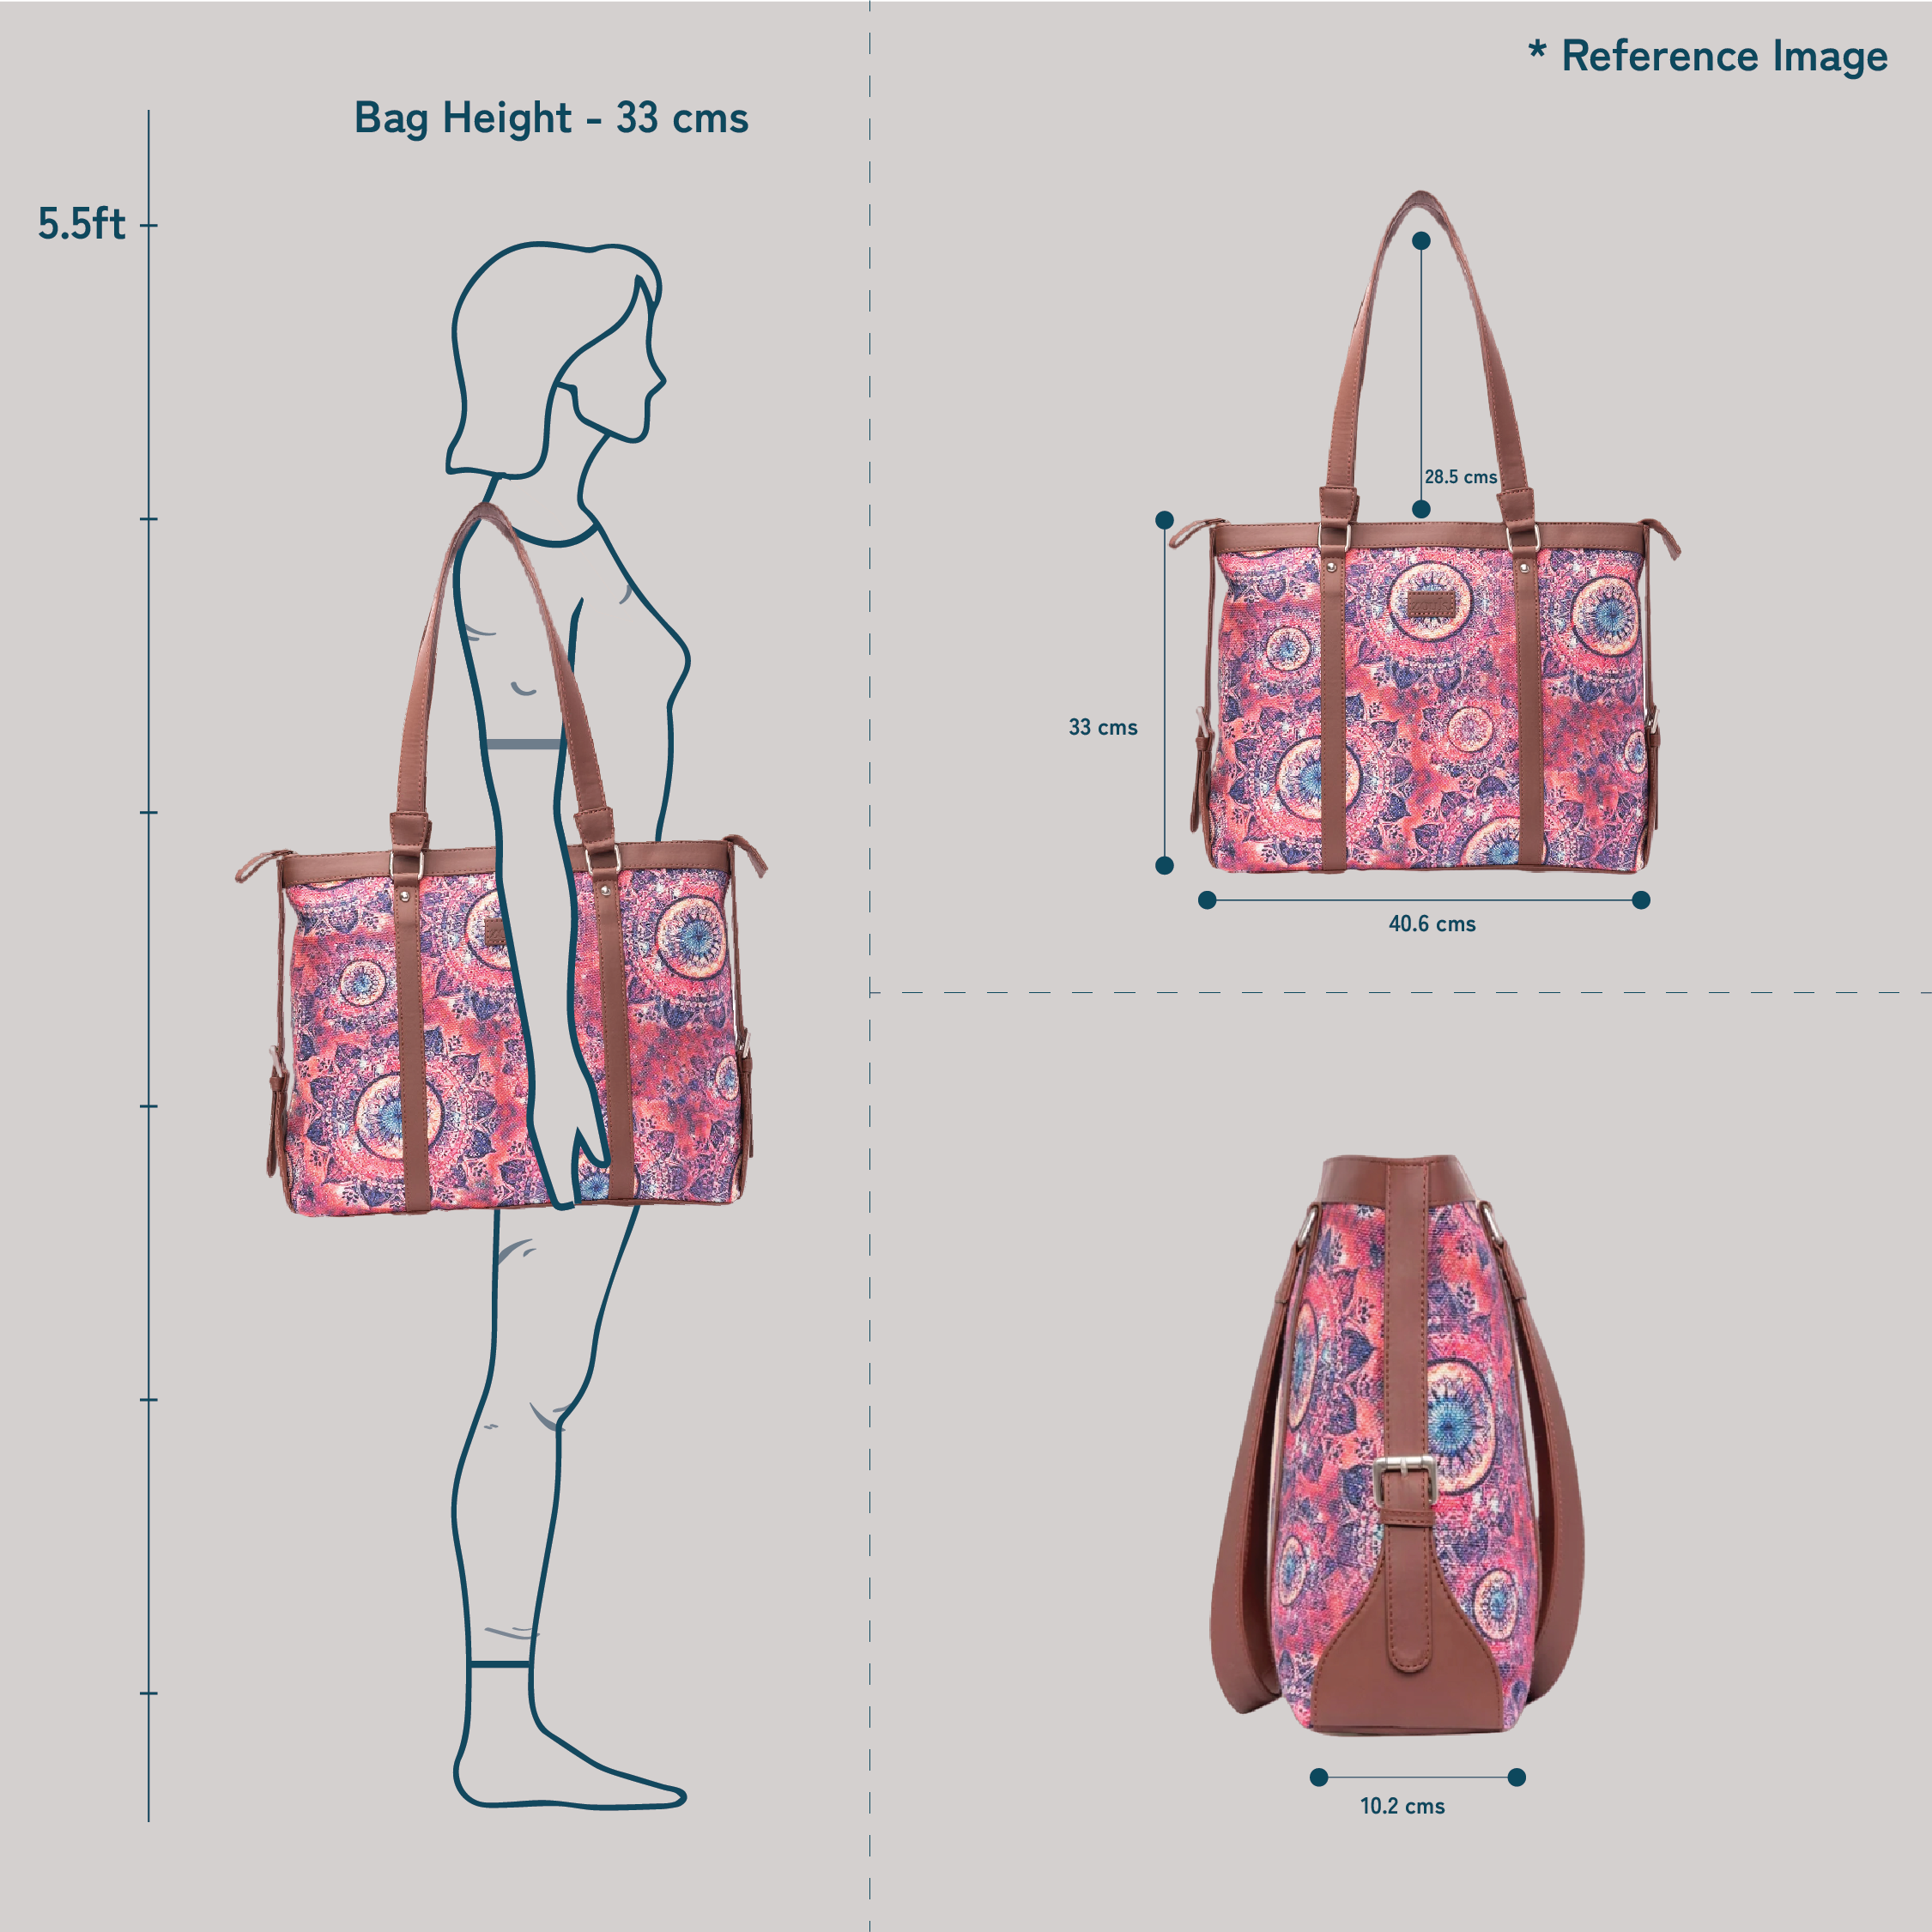 Buy V Raj Bag Women's leather Multi Handbag (40 x 12 x 30 Cm (L × W × H))  at Amazon.in